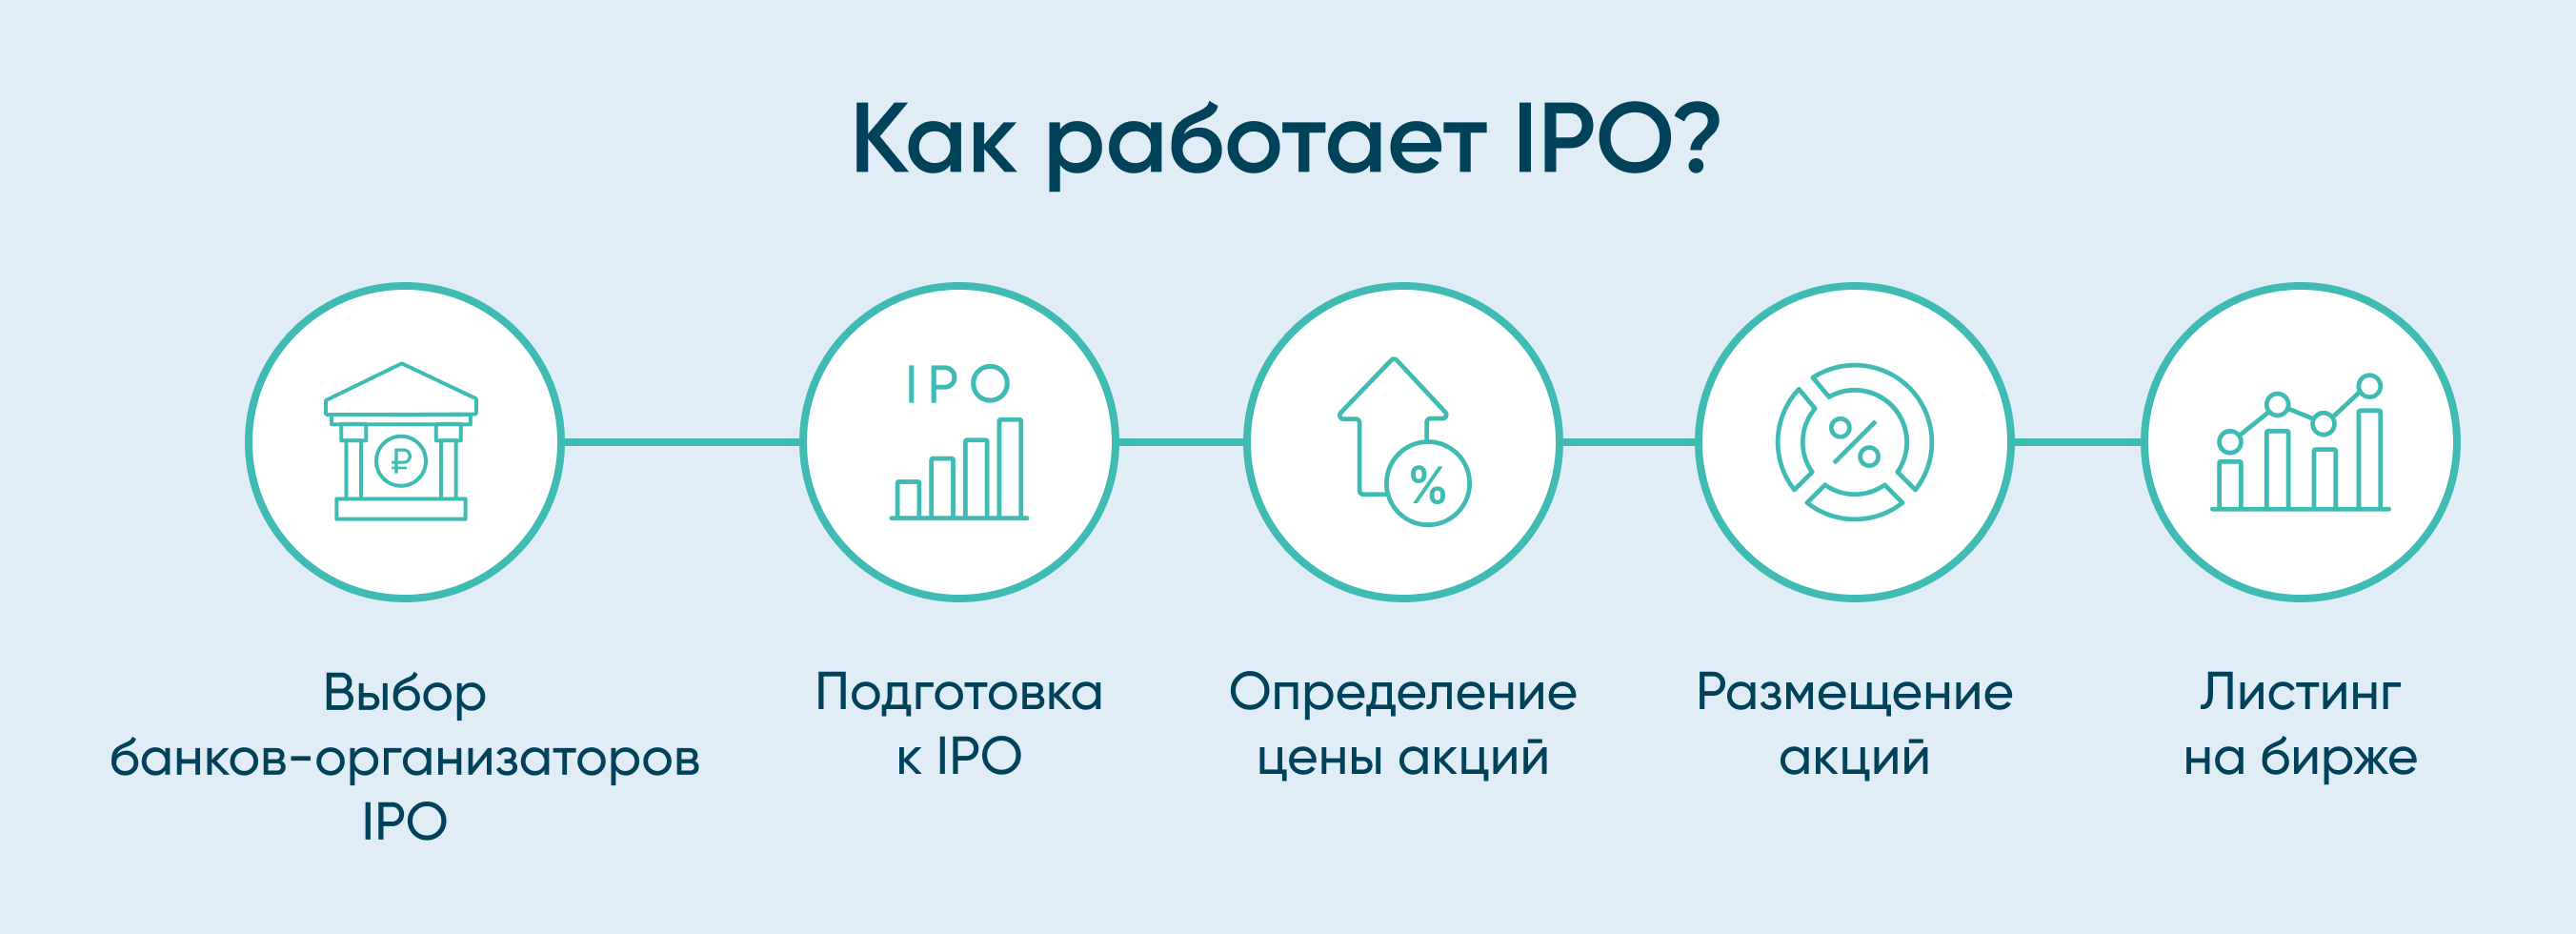 Что такое IPO, и как в него инвестировать – Экспобанк